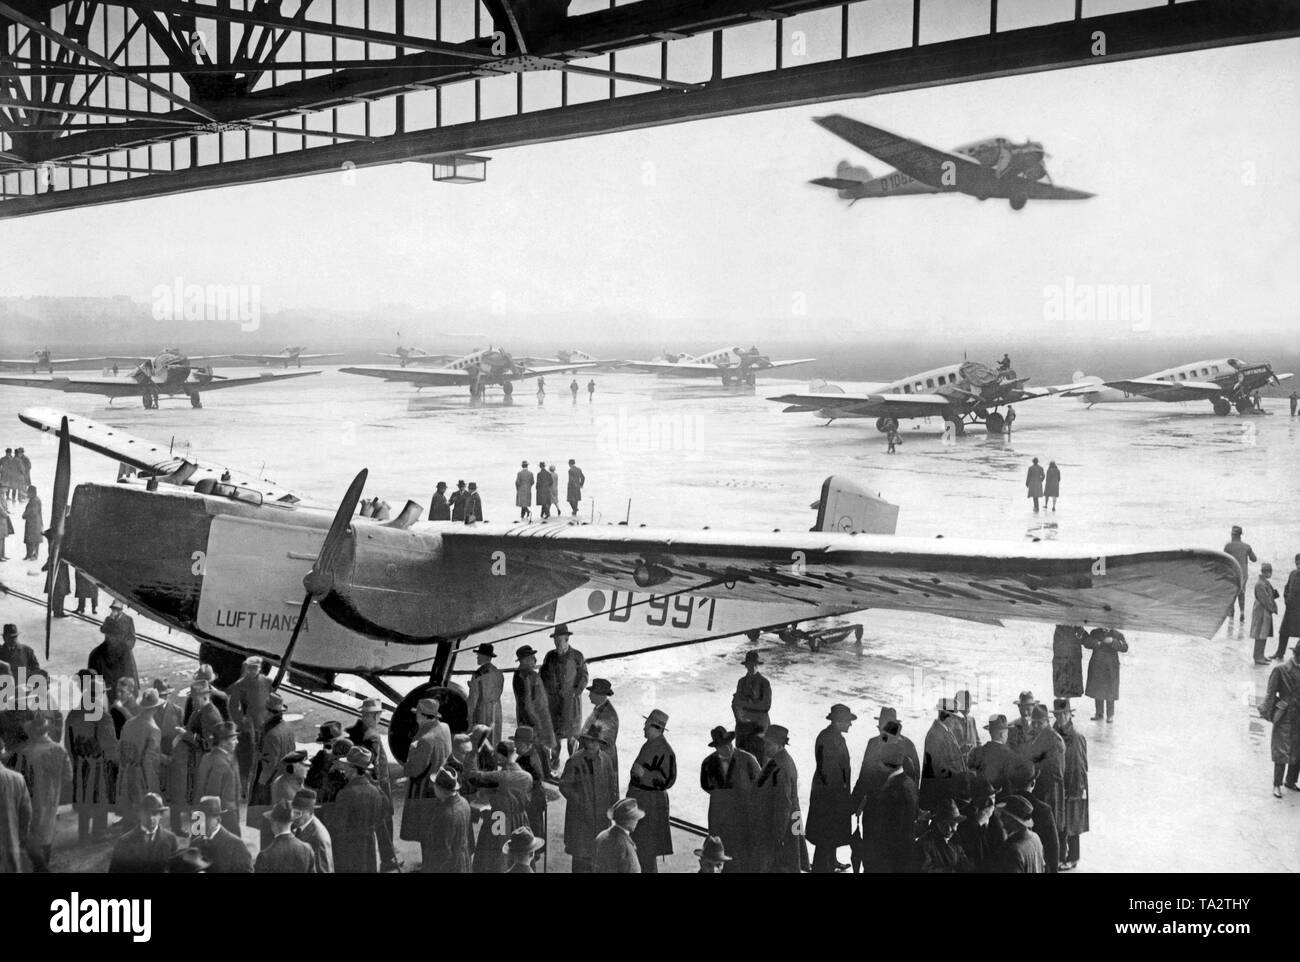 Apertura dell'estate il traffico aereo della Deutsche Lufthansa. Sulla zona di manovra di Tempelhof Airport vi sono vari velivoli Junkers, in hangar un Rohrbach Ro VIII " Roland'. Foto Stock